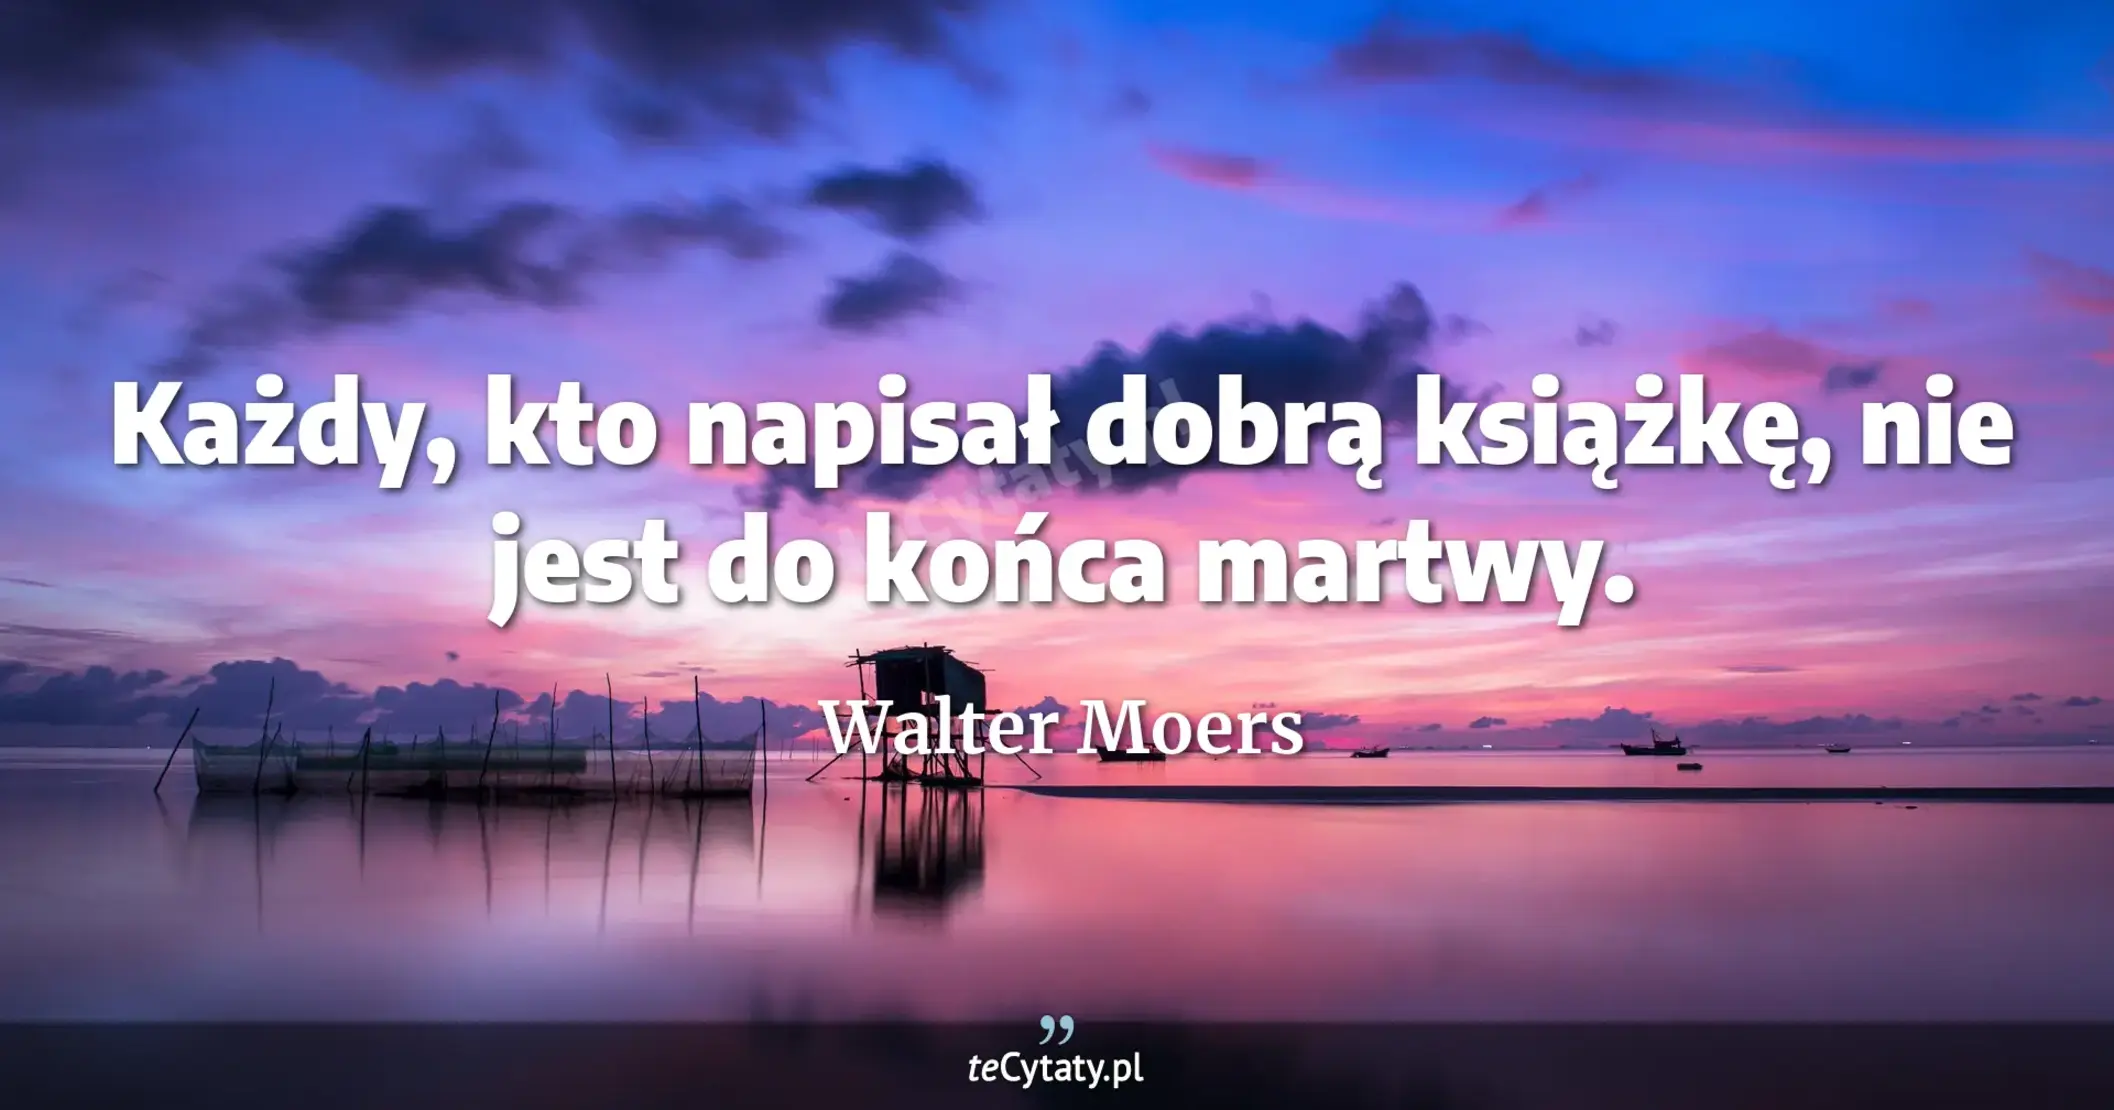 Każdy, kto napisał dobrą książkę, nie jest do końca martwy. - Walter Moers